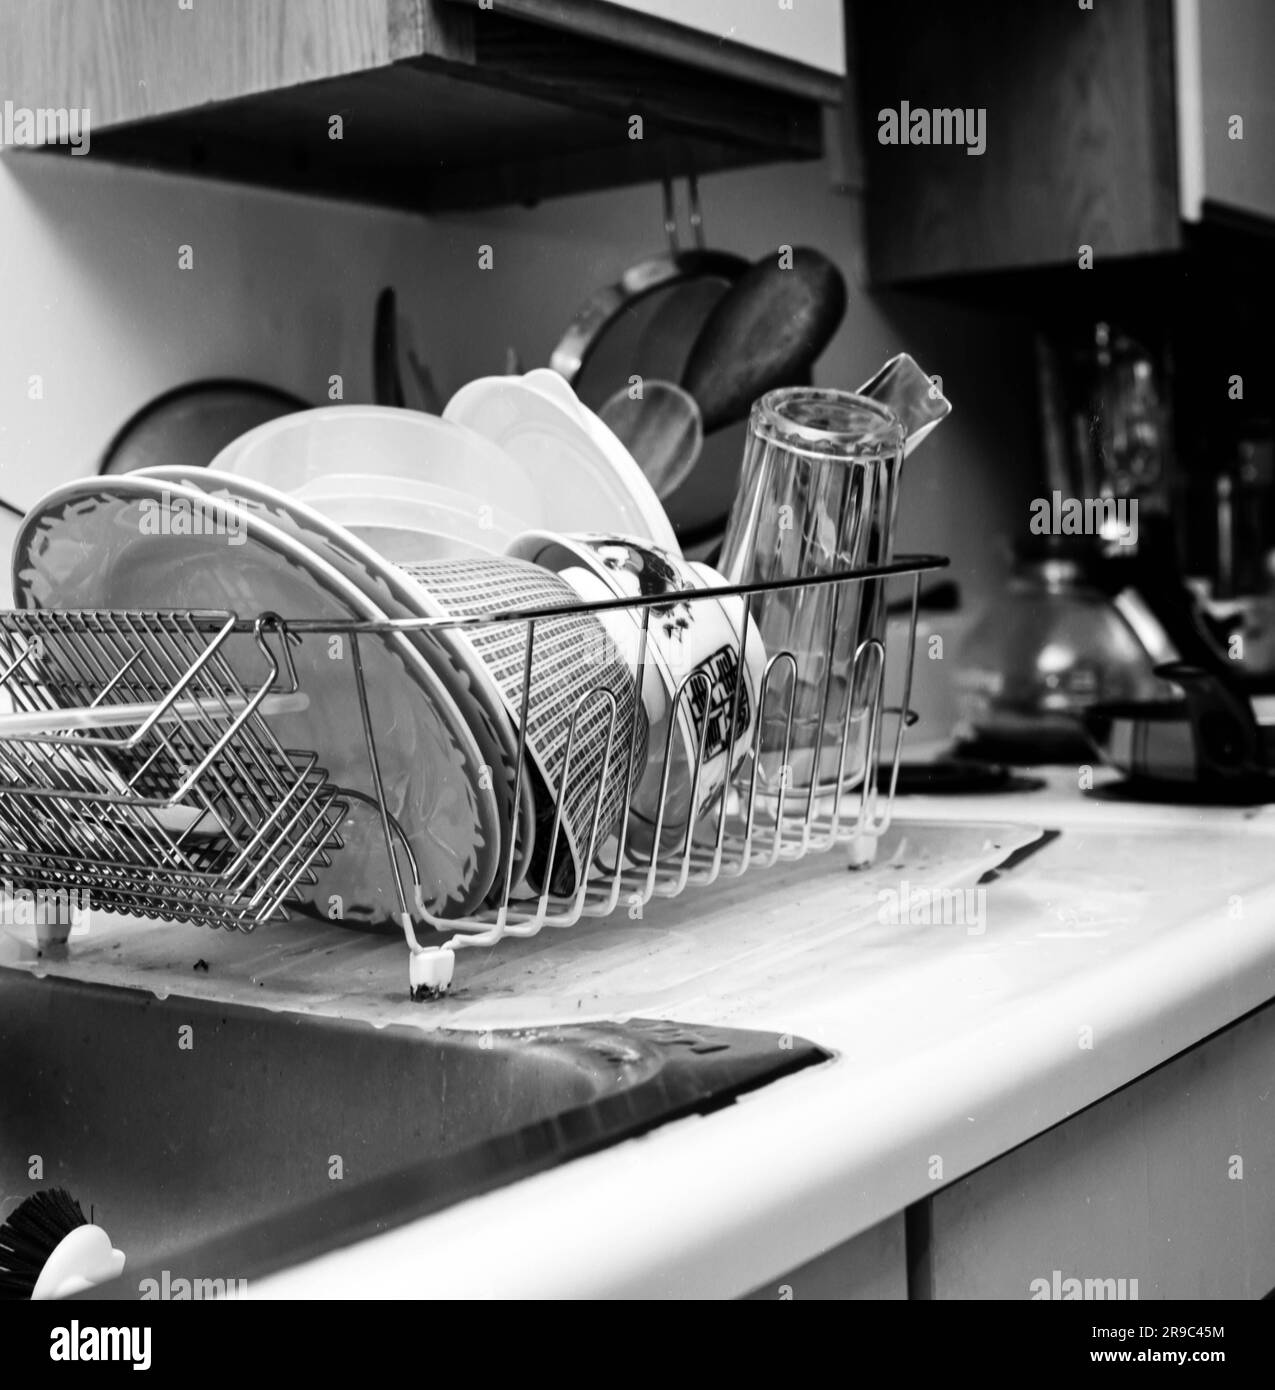 Dettagli della cucina in bianco e nero ripresi con Hasselblad con lente planare da 80 mm -- gocciolatoio per lavello Foto Stock